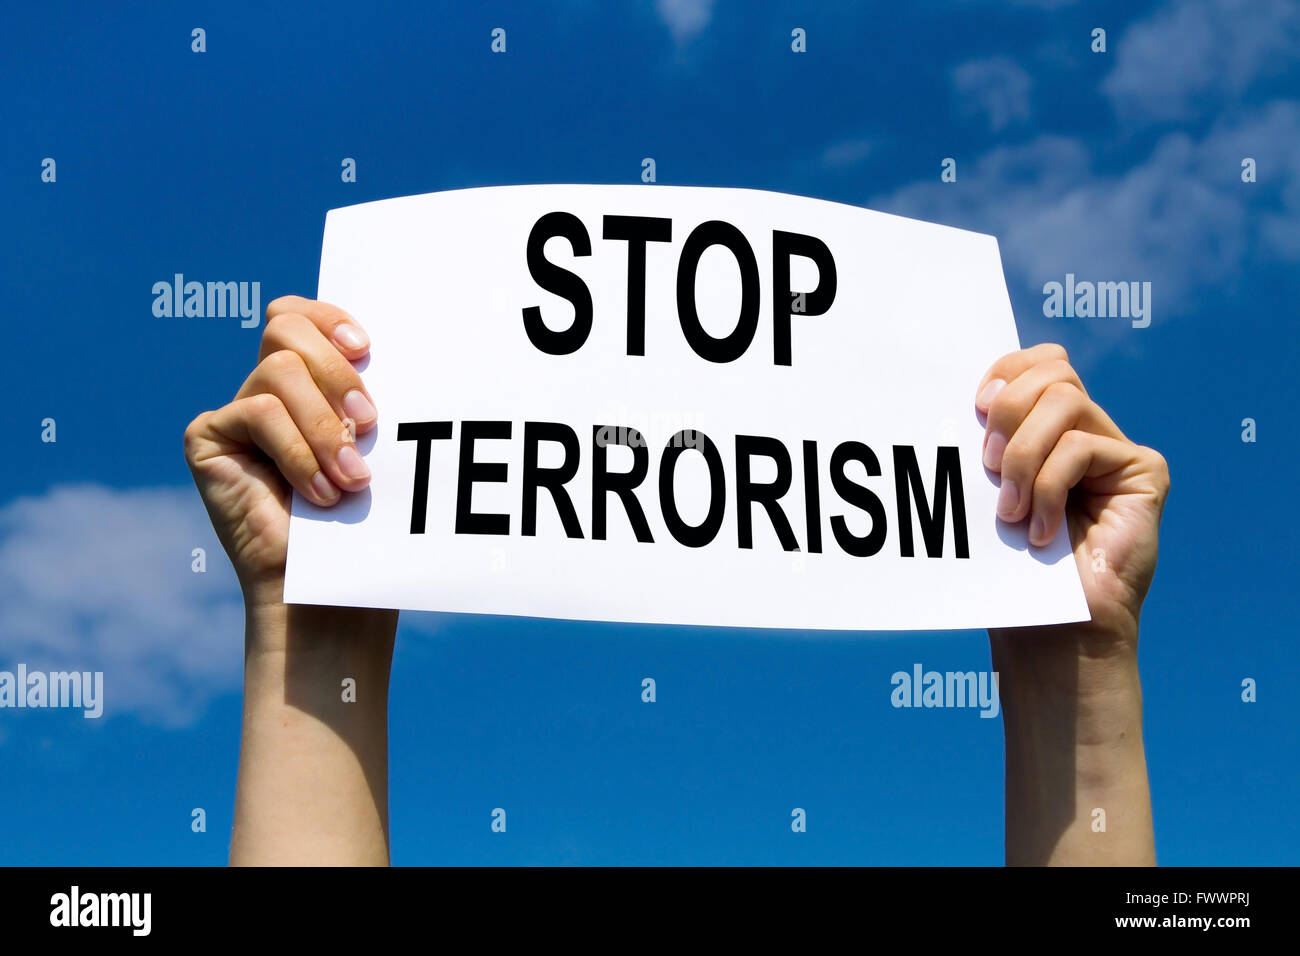 stop terrorism concept Stock Photo